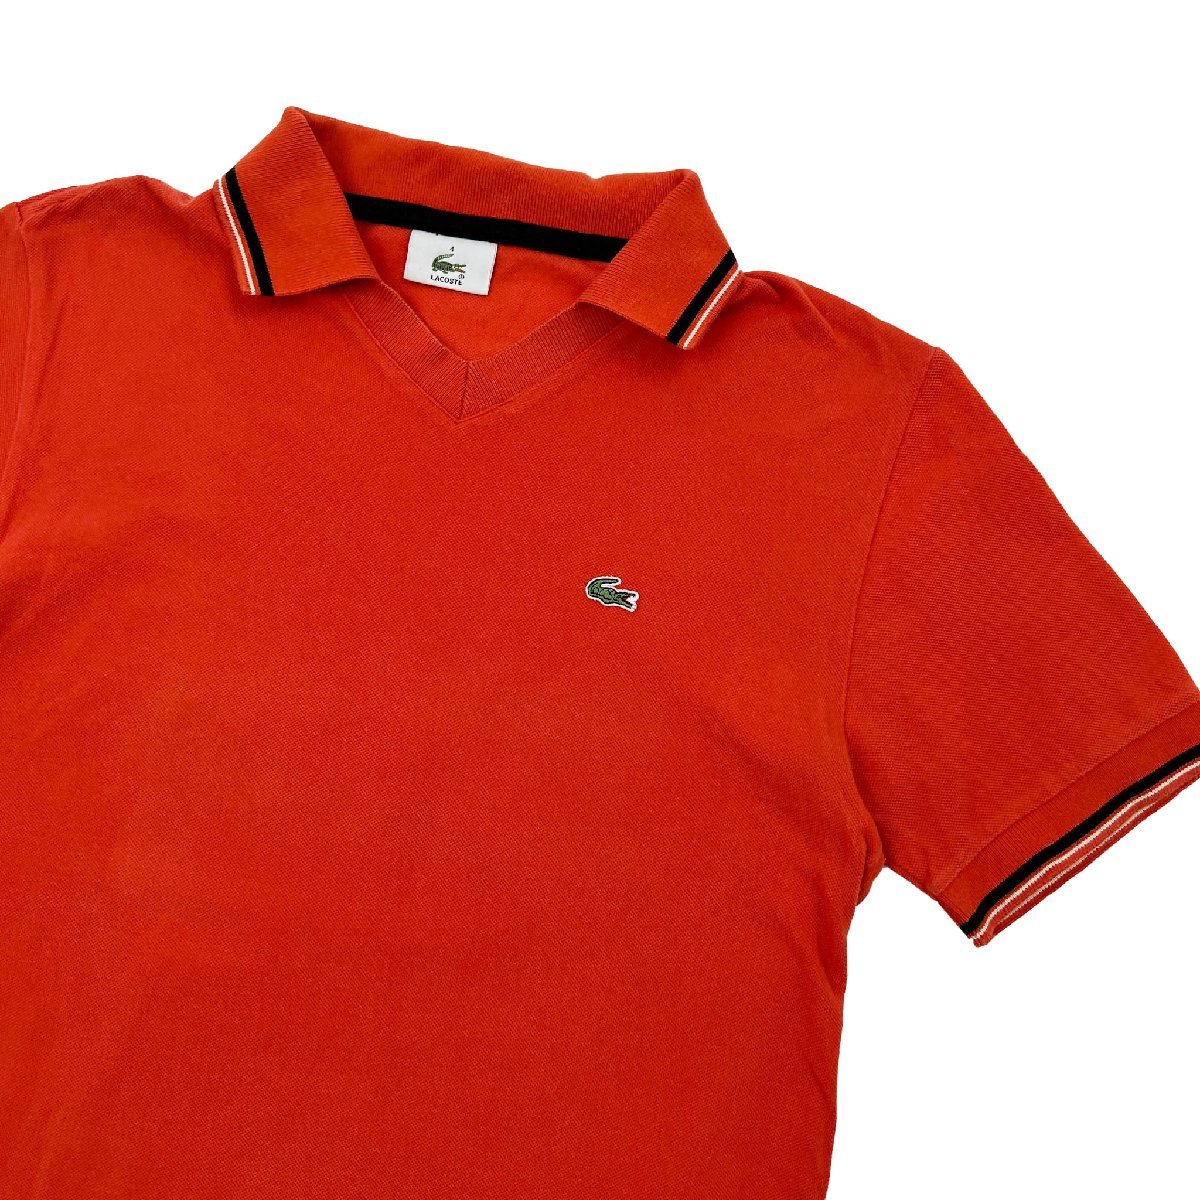 LACOSTE ラコステ 襟,袖ライン入り スキッパー 半袖 ポロシャツ サイズ 4 /ファブリカ/日本製/オレンジ系の画像1